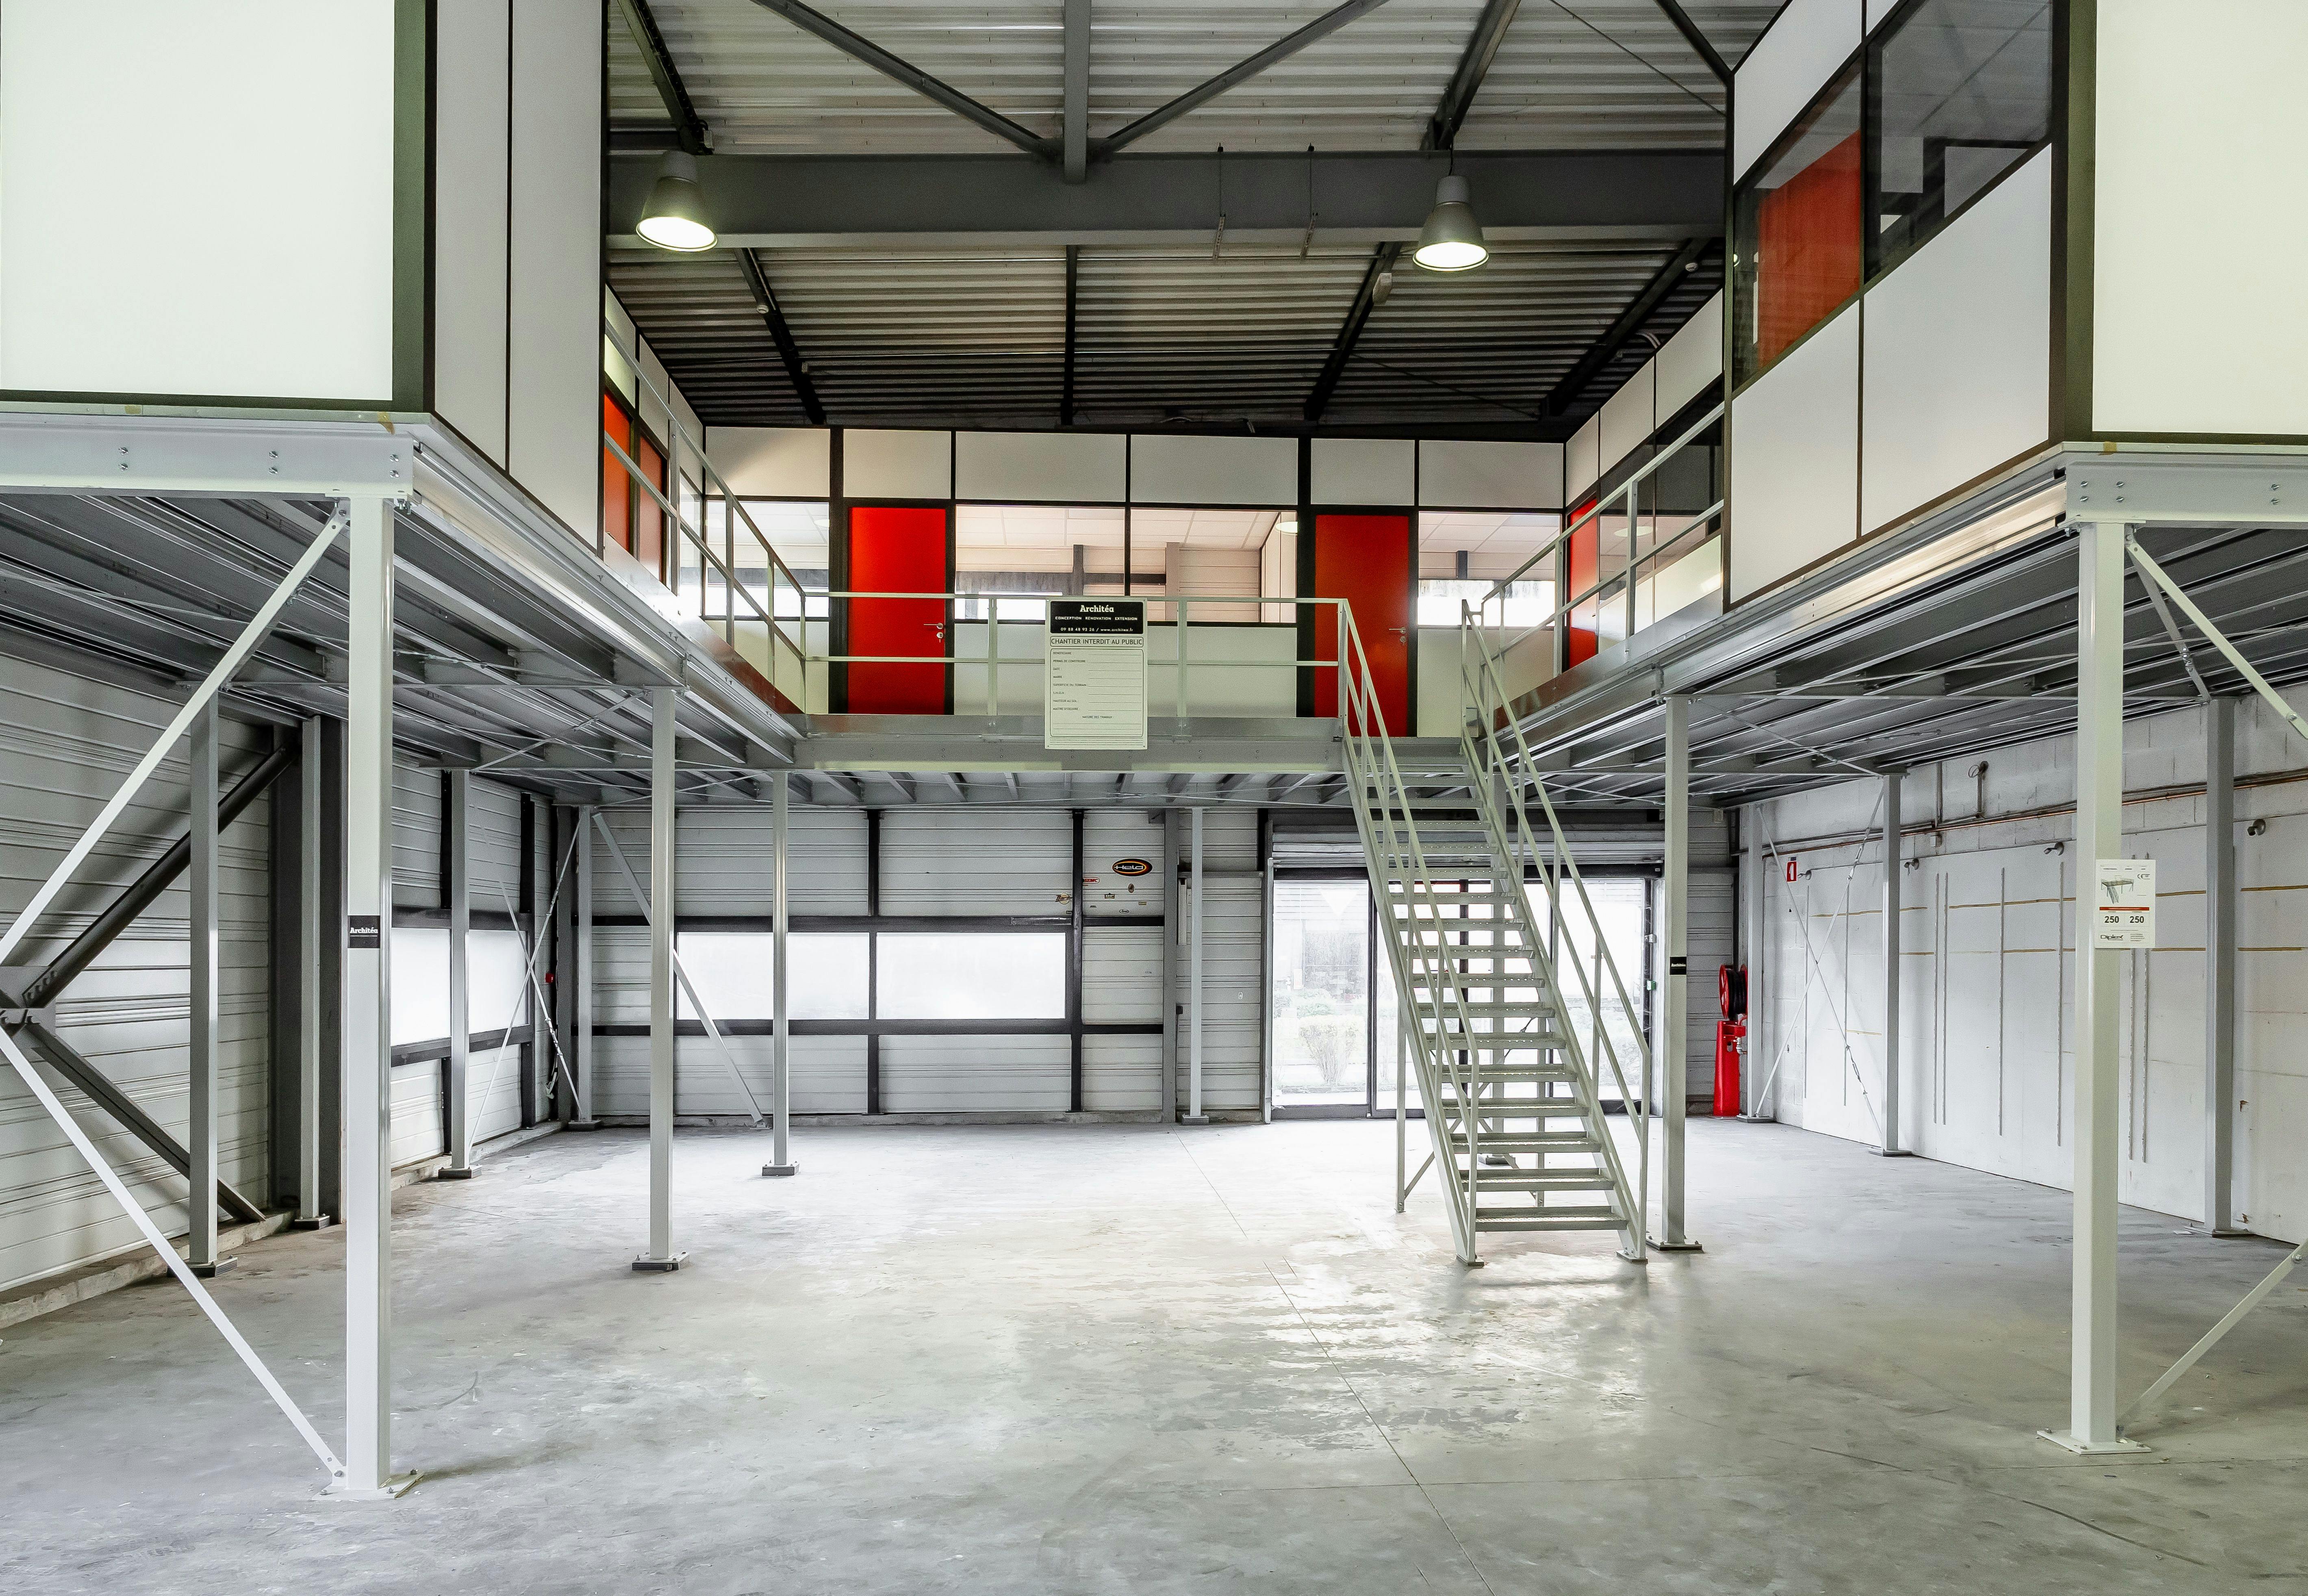 Réhabilitation d'un hangar industriel en bureaux